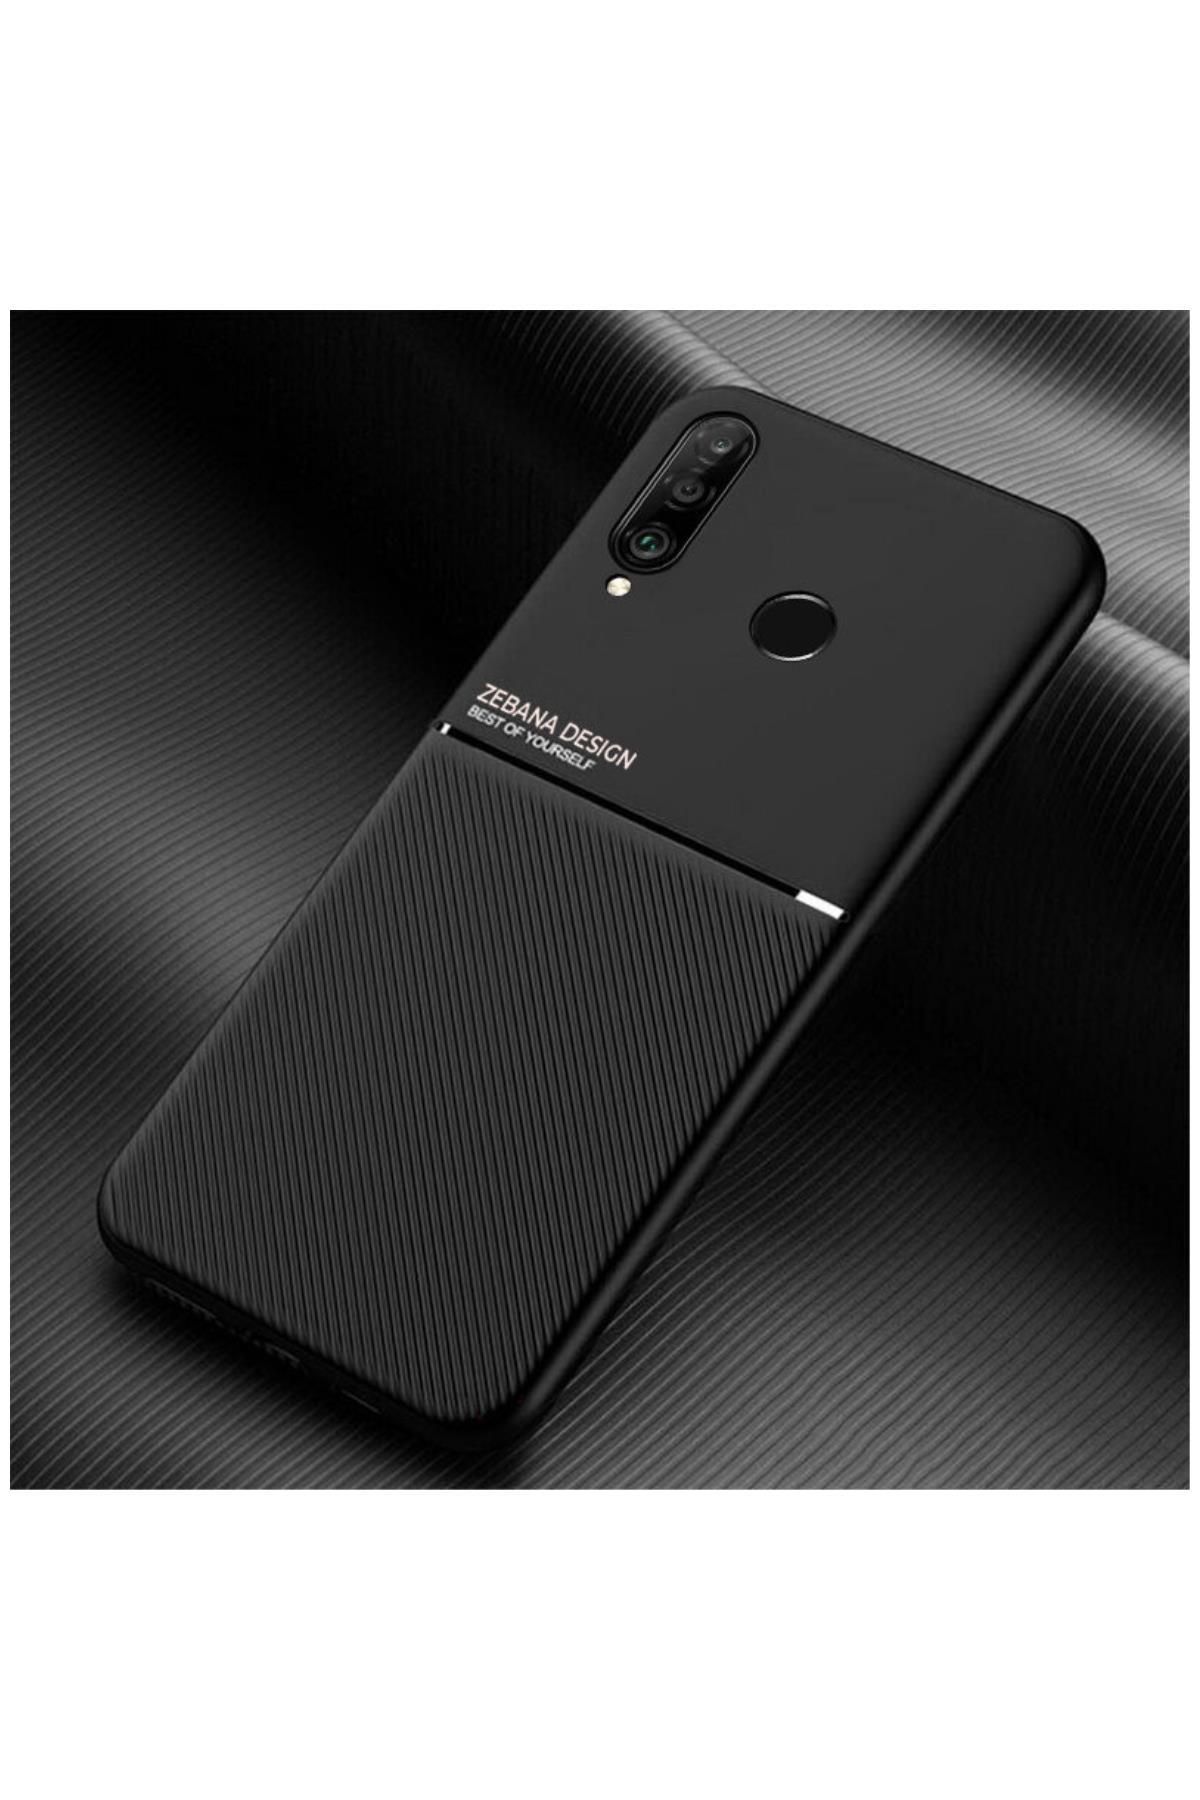 Dara Aksesuar Huawei P30 Lite Uyumlu Kılıf Zebana Design Silikon Kılıf Siyah